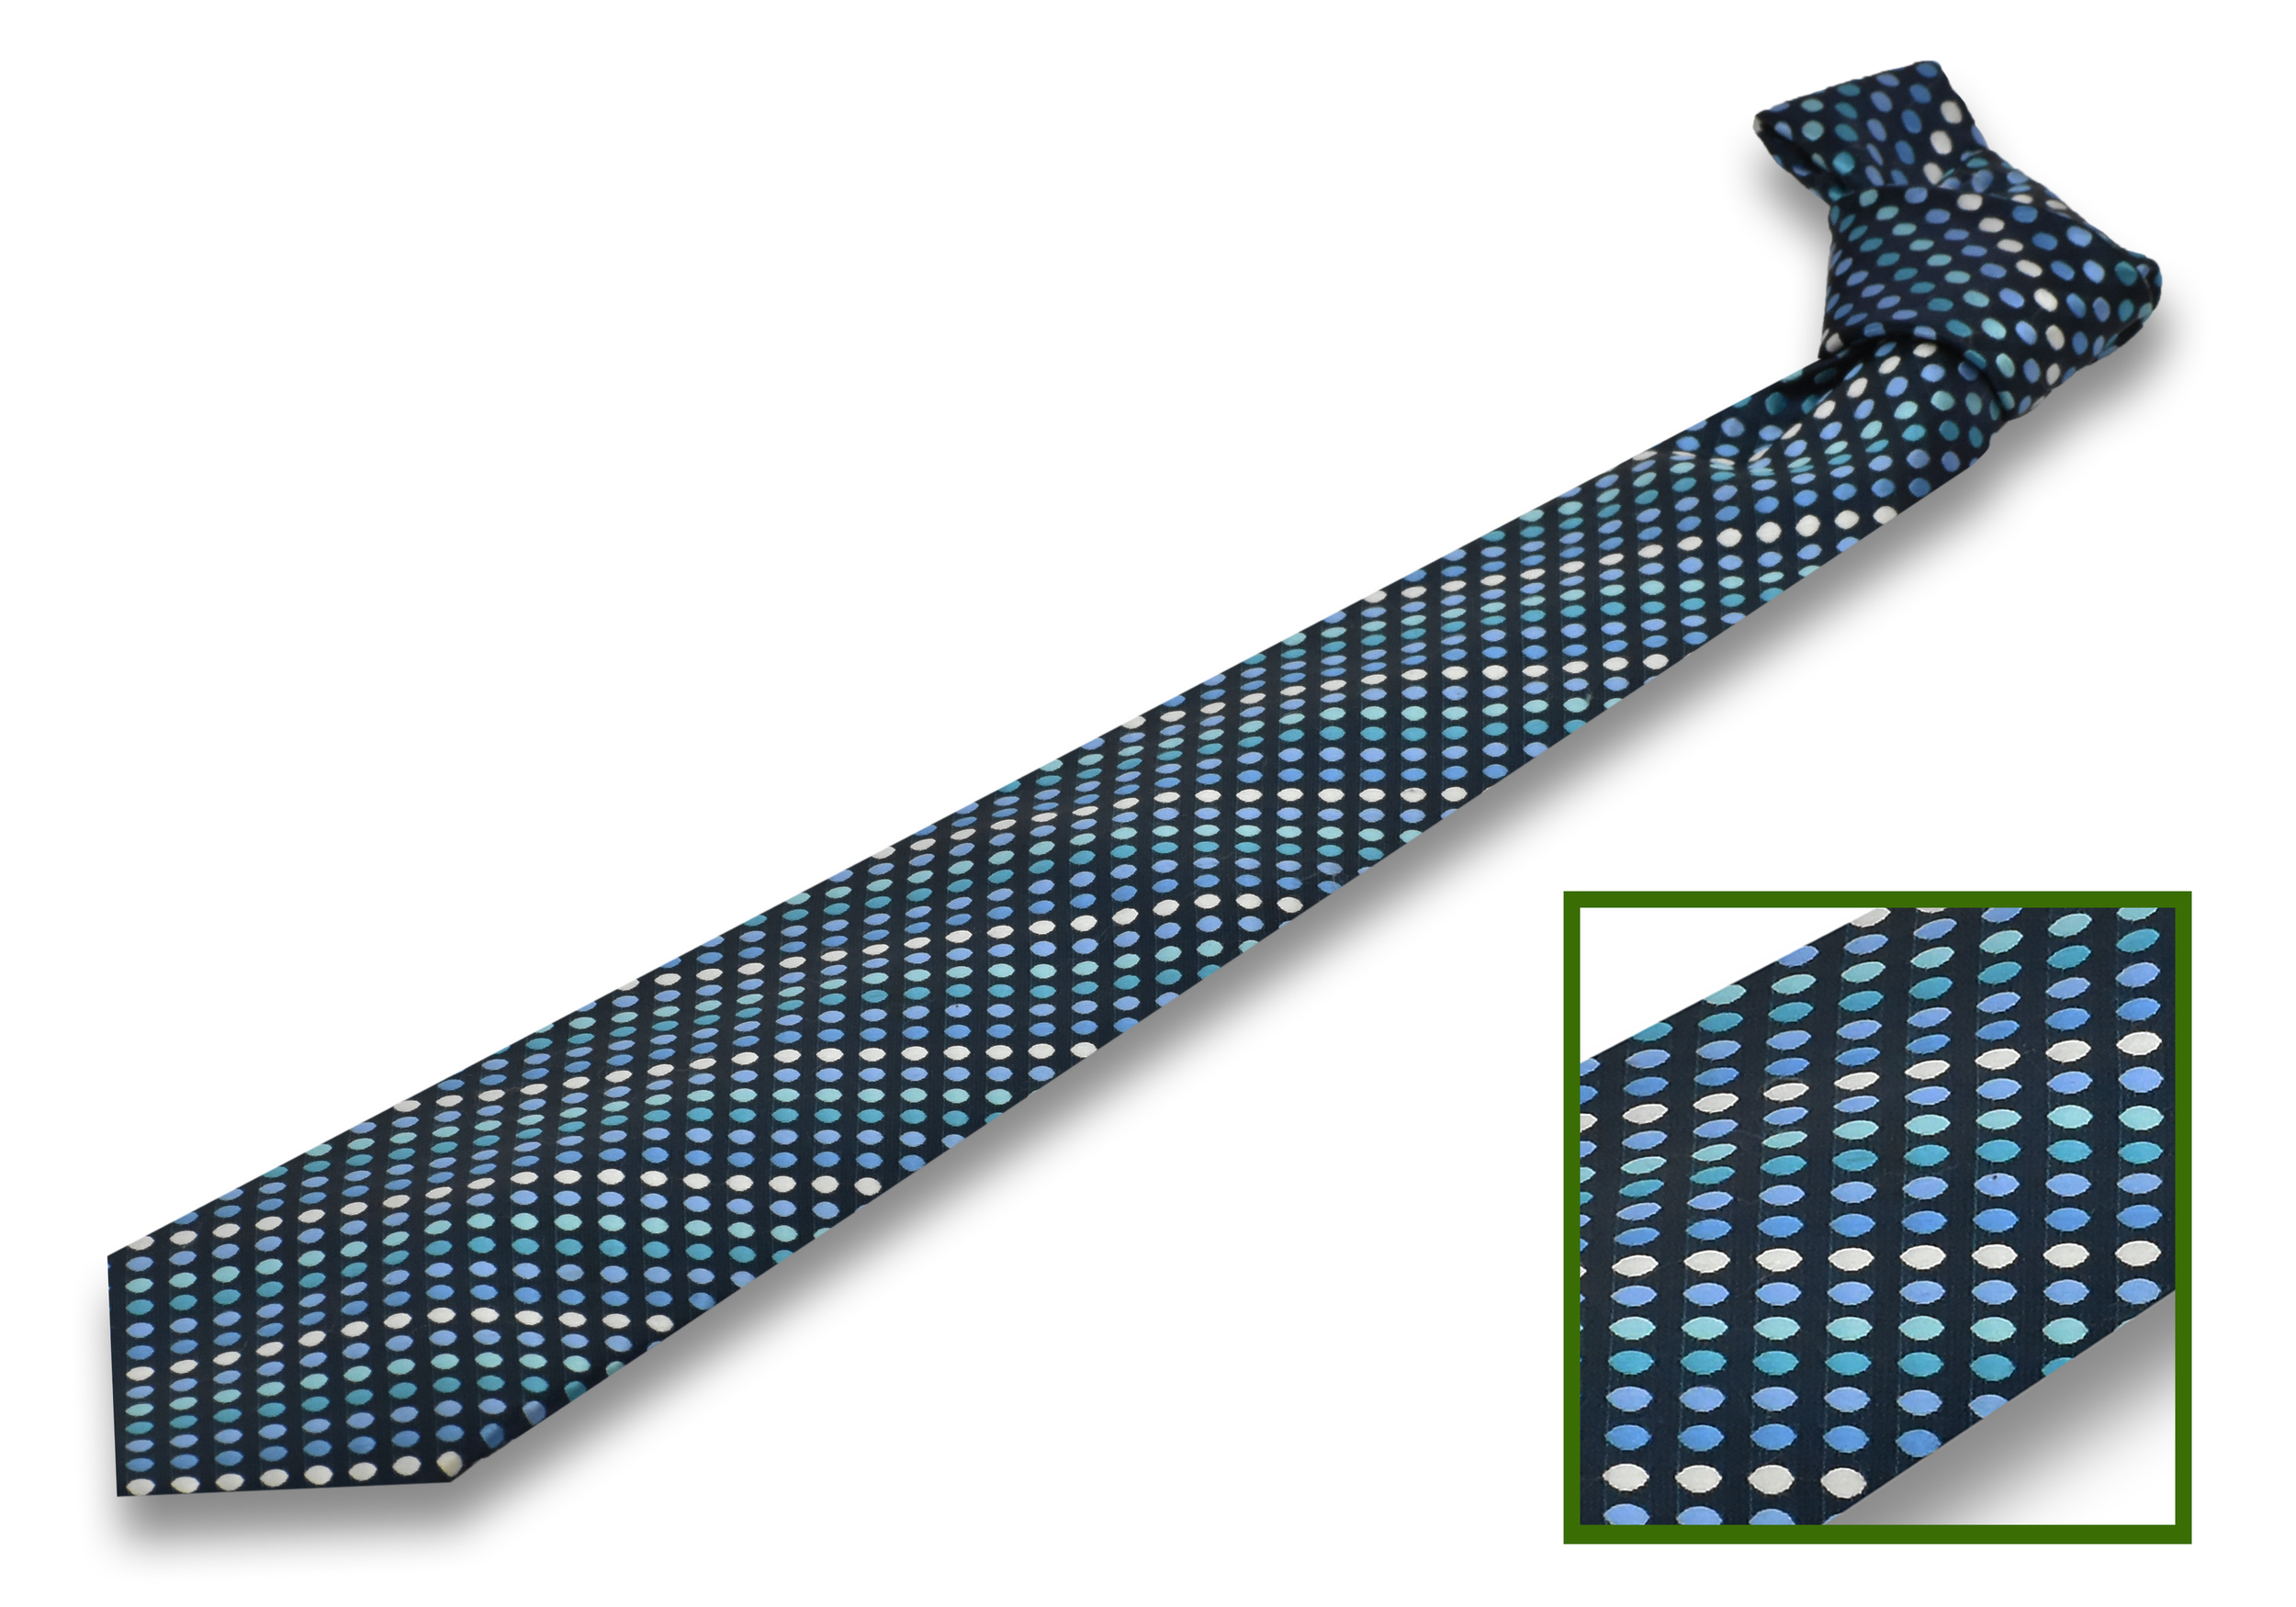 European Design Tie for Men